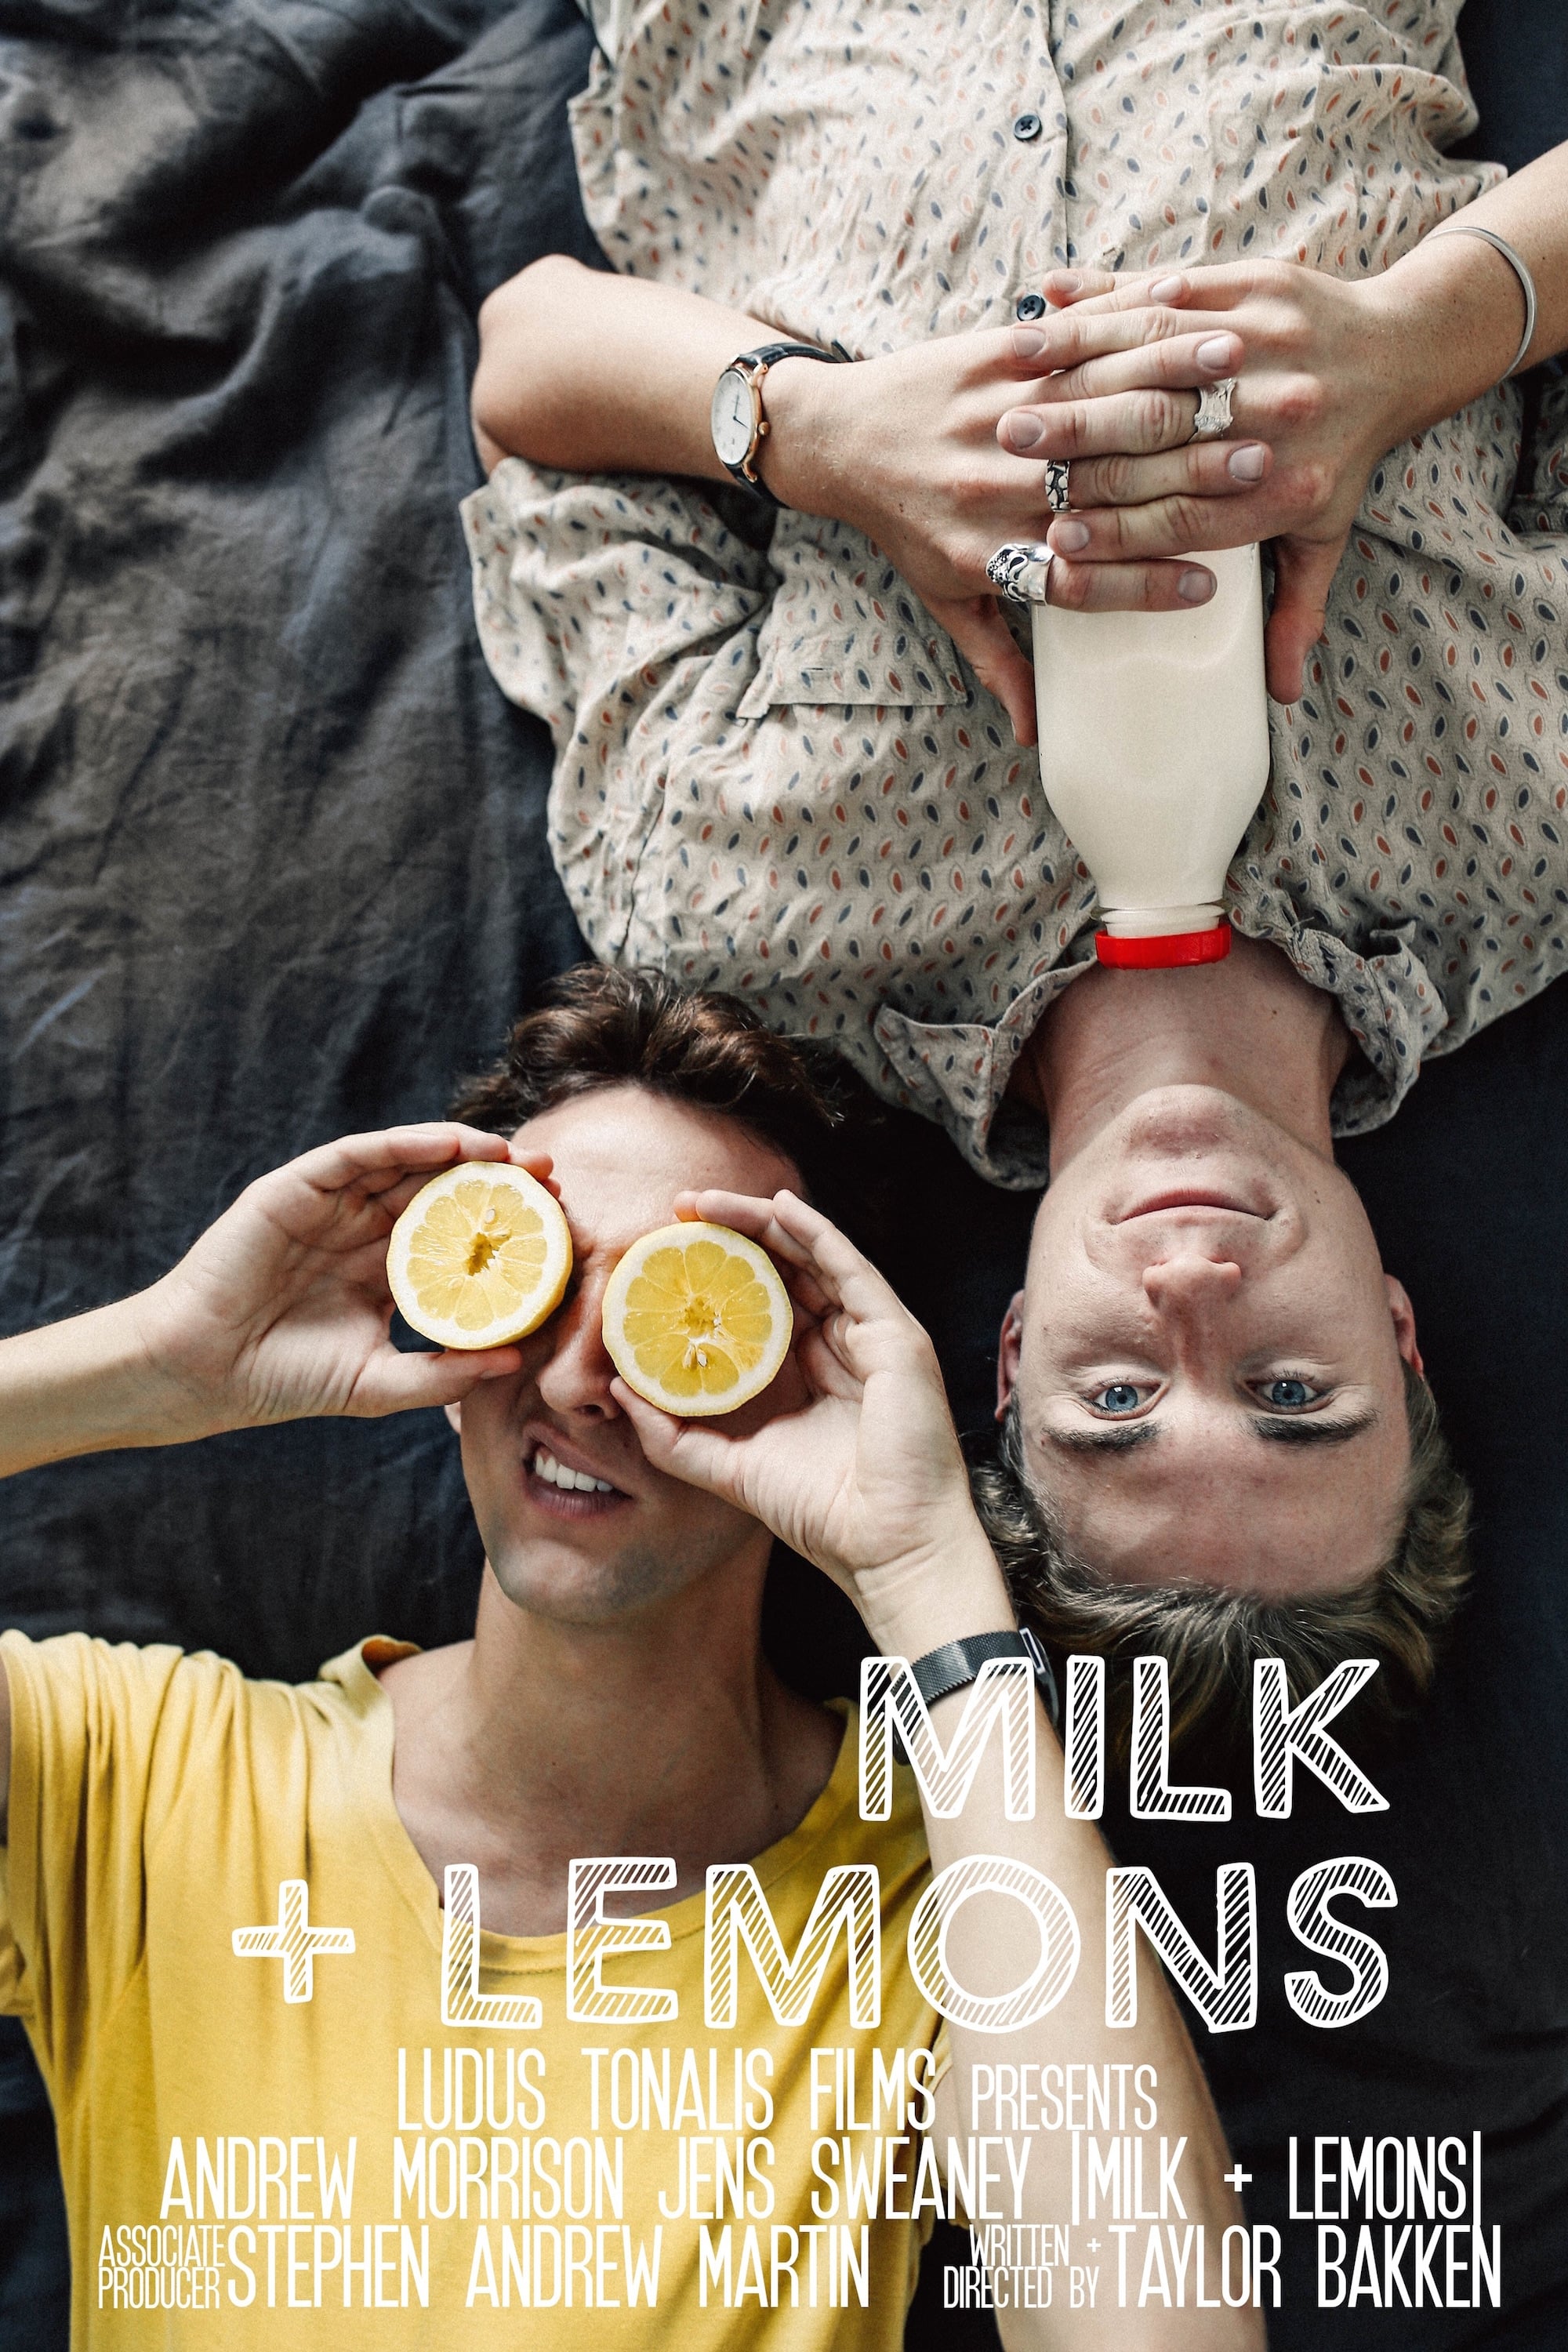 Milk + Lemons